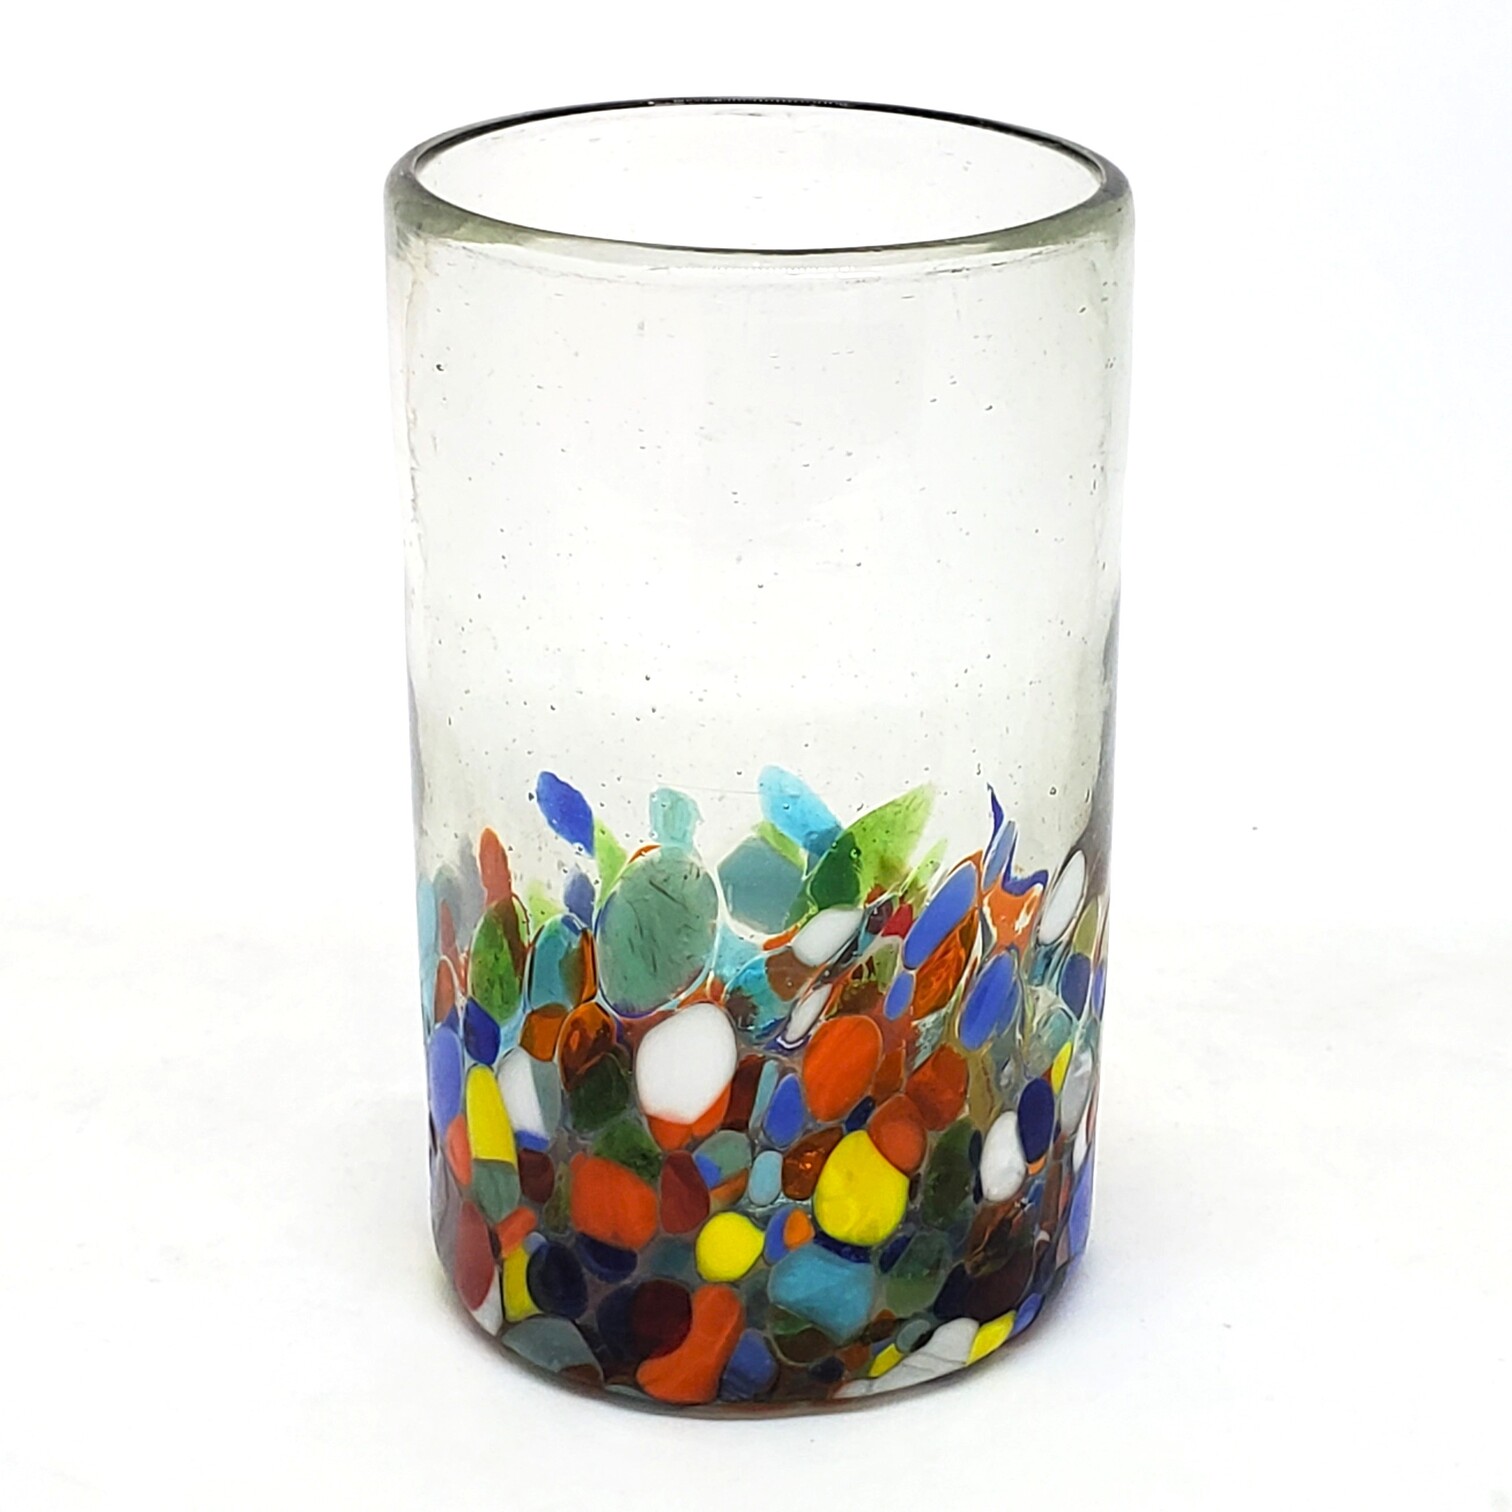 VIDRIO SOPLADO / Juego de 6 vasos grandes 'Cristal & Confeti', 14 oz, Vidrio Reciclado, Libre de Plomo y Toxinas